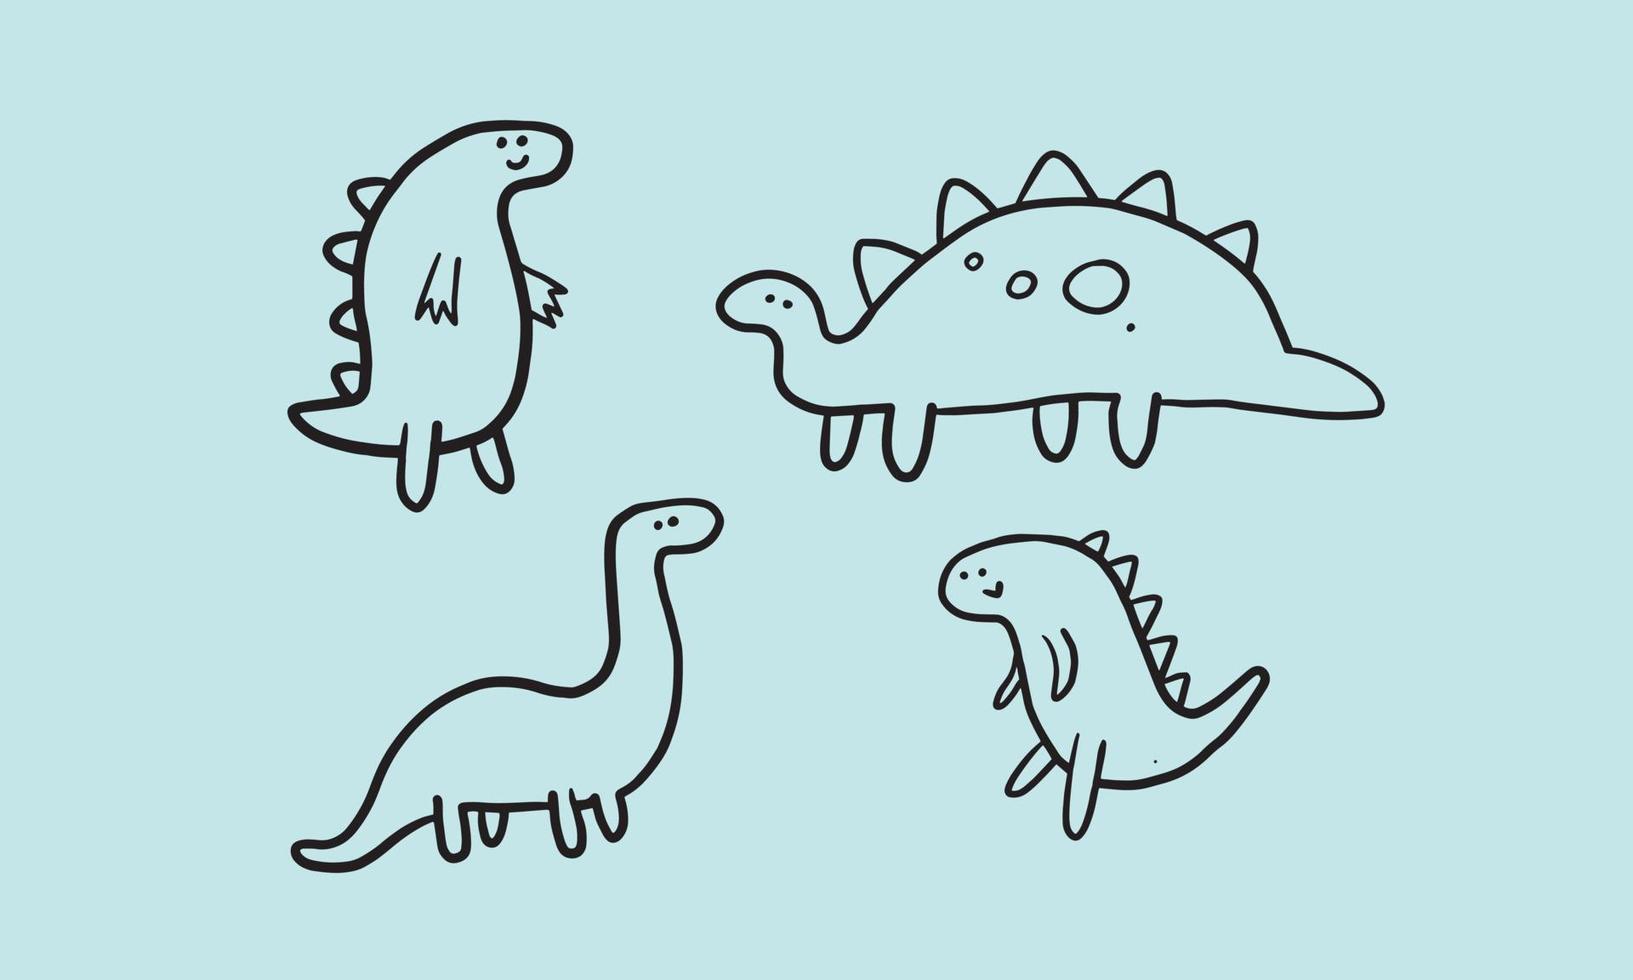 conjunto de lindas ilustraciones de dinosaurios. diseño simple y minimalista para niños. elemento divertido para crear campañas o carteles para niños. vector